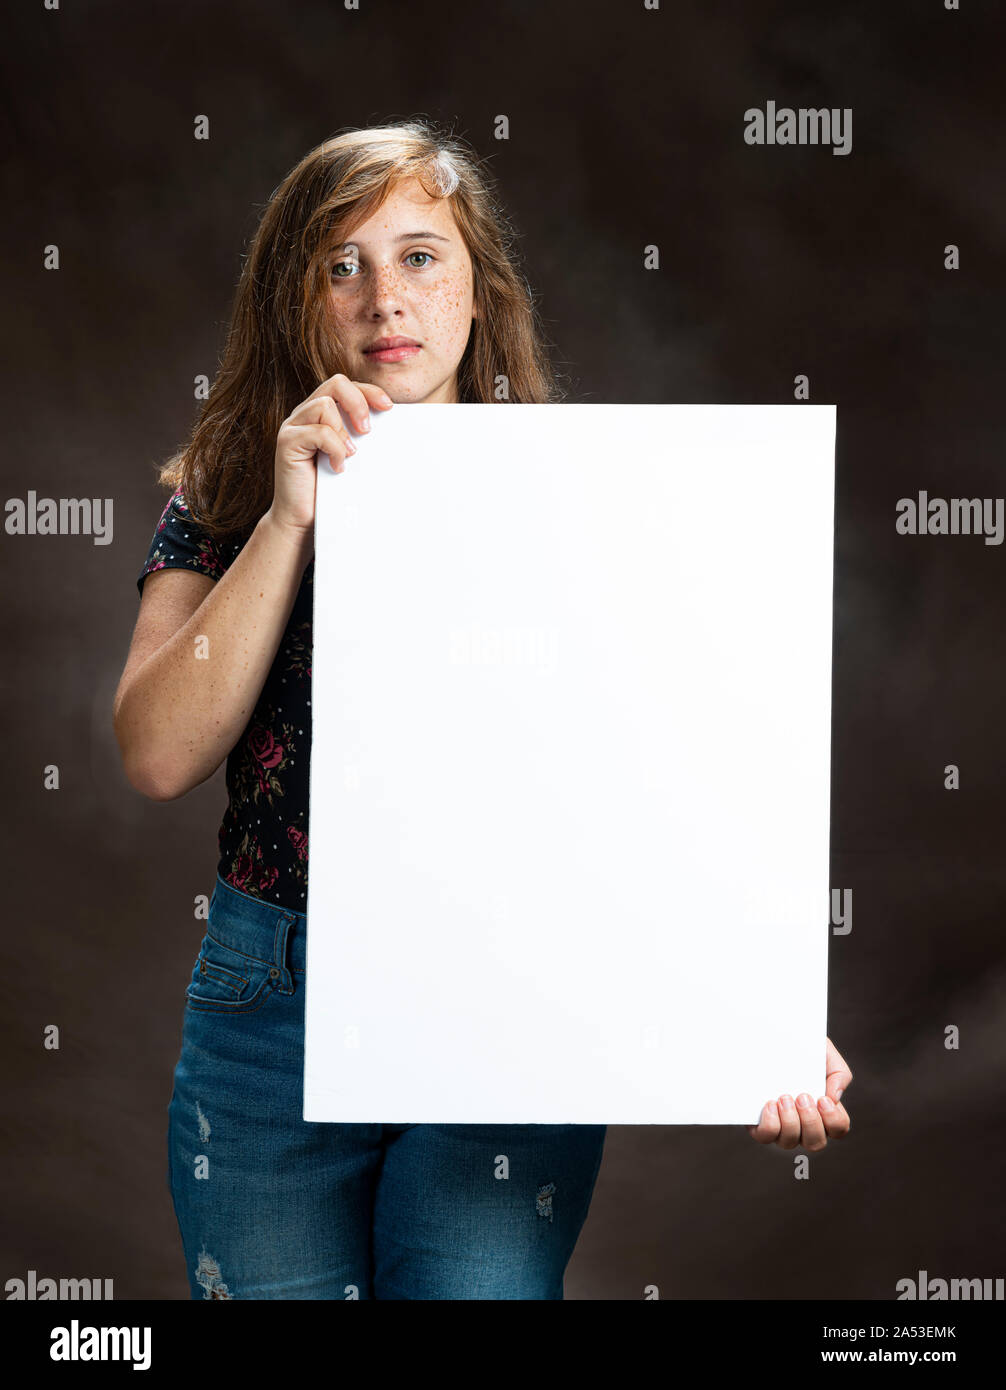 Vertikale studio Aufnahme eines ernsthaften Suchen vor - jugendlich Mädchen, dass eine leere vertikale weiße Zeichen. Braunen Hintergrund. Stockfoto